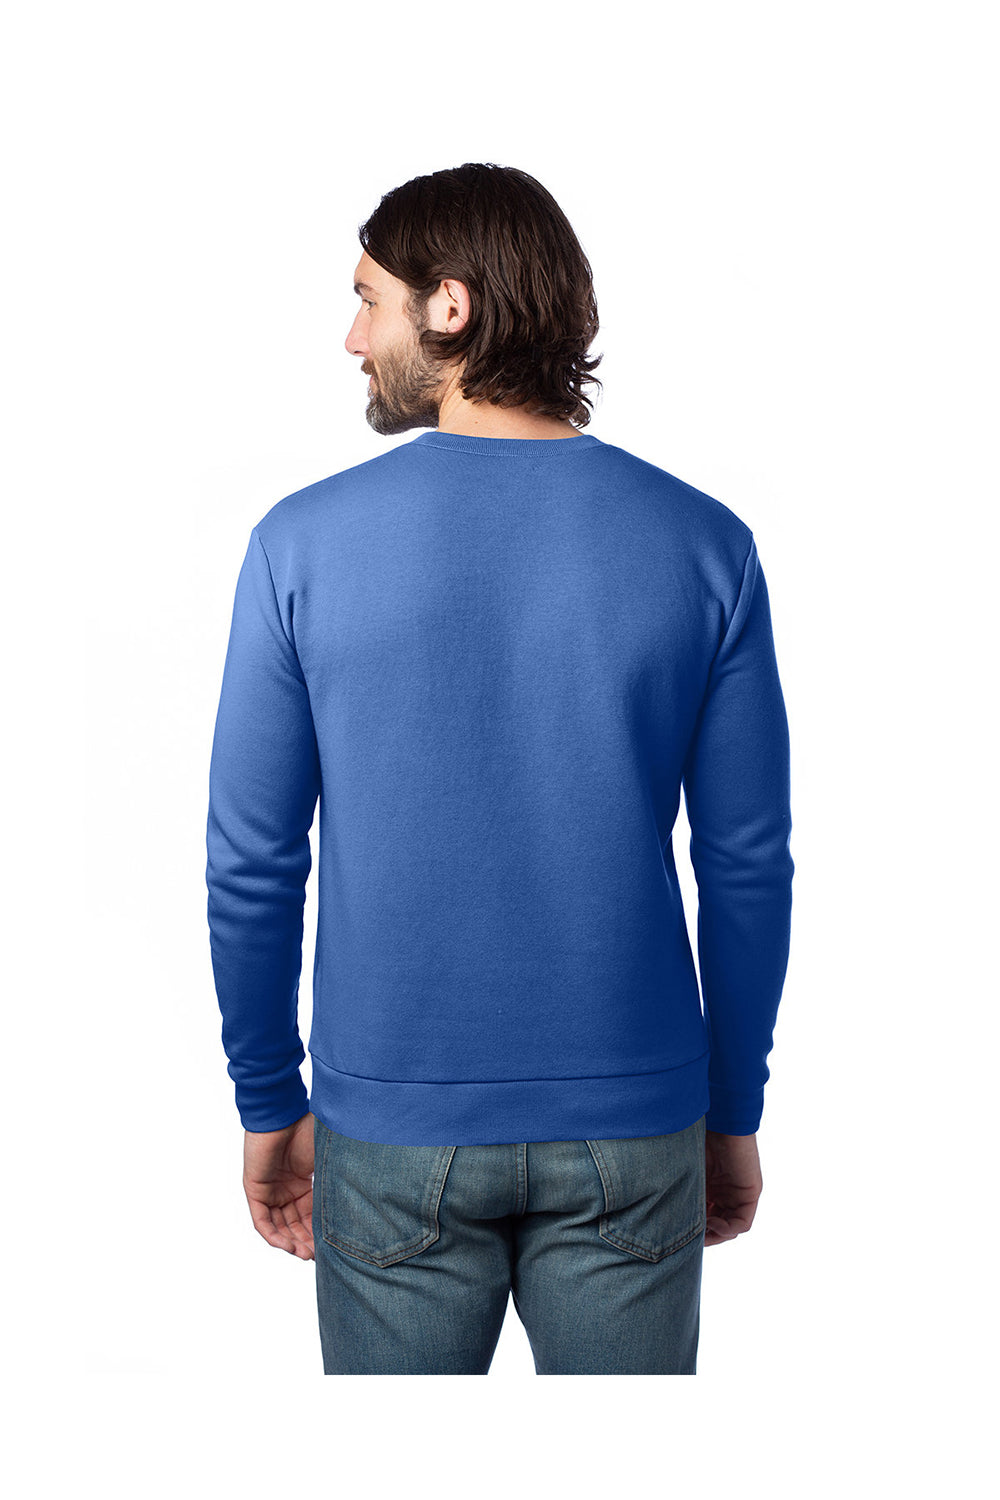 Alternative 8800PF Mens Eco Cozy Fleece Crewneck Sweatshirt Heritage Royal Blue Back